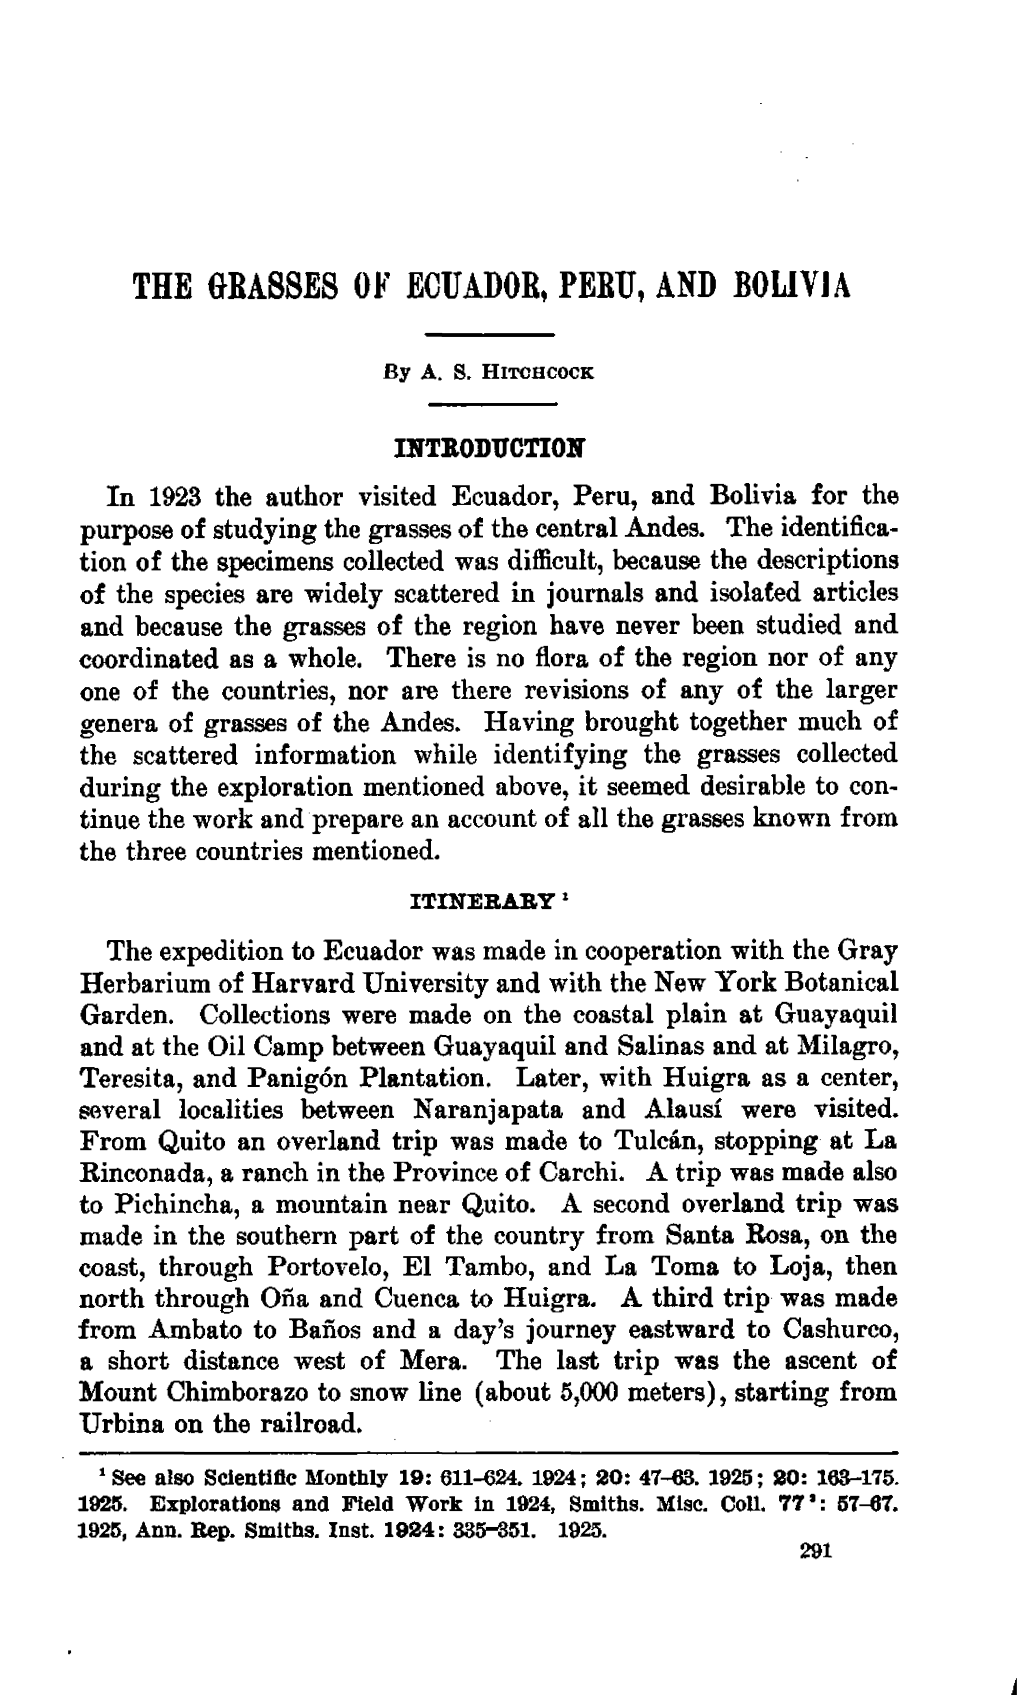 THE MASSES of ECUADOR, PEBTJ, and BOUVIA by A. S. Hitchcock